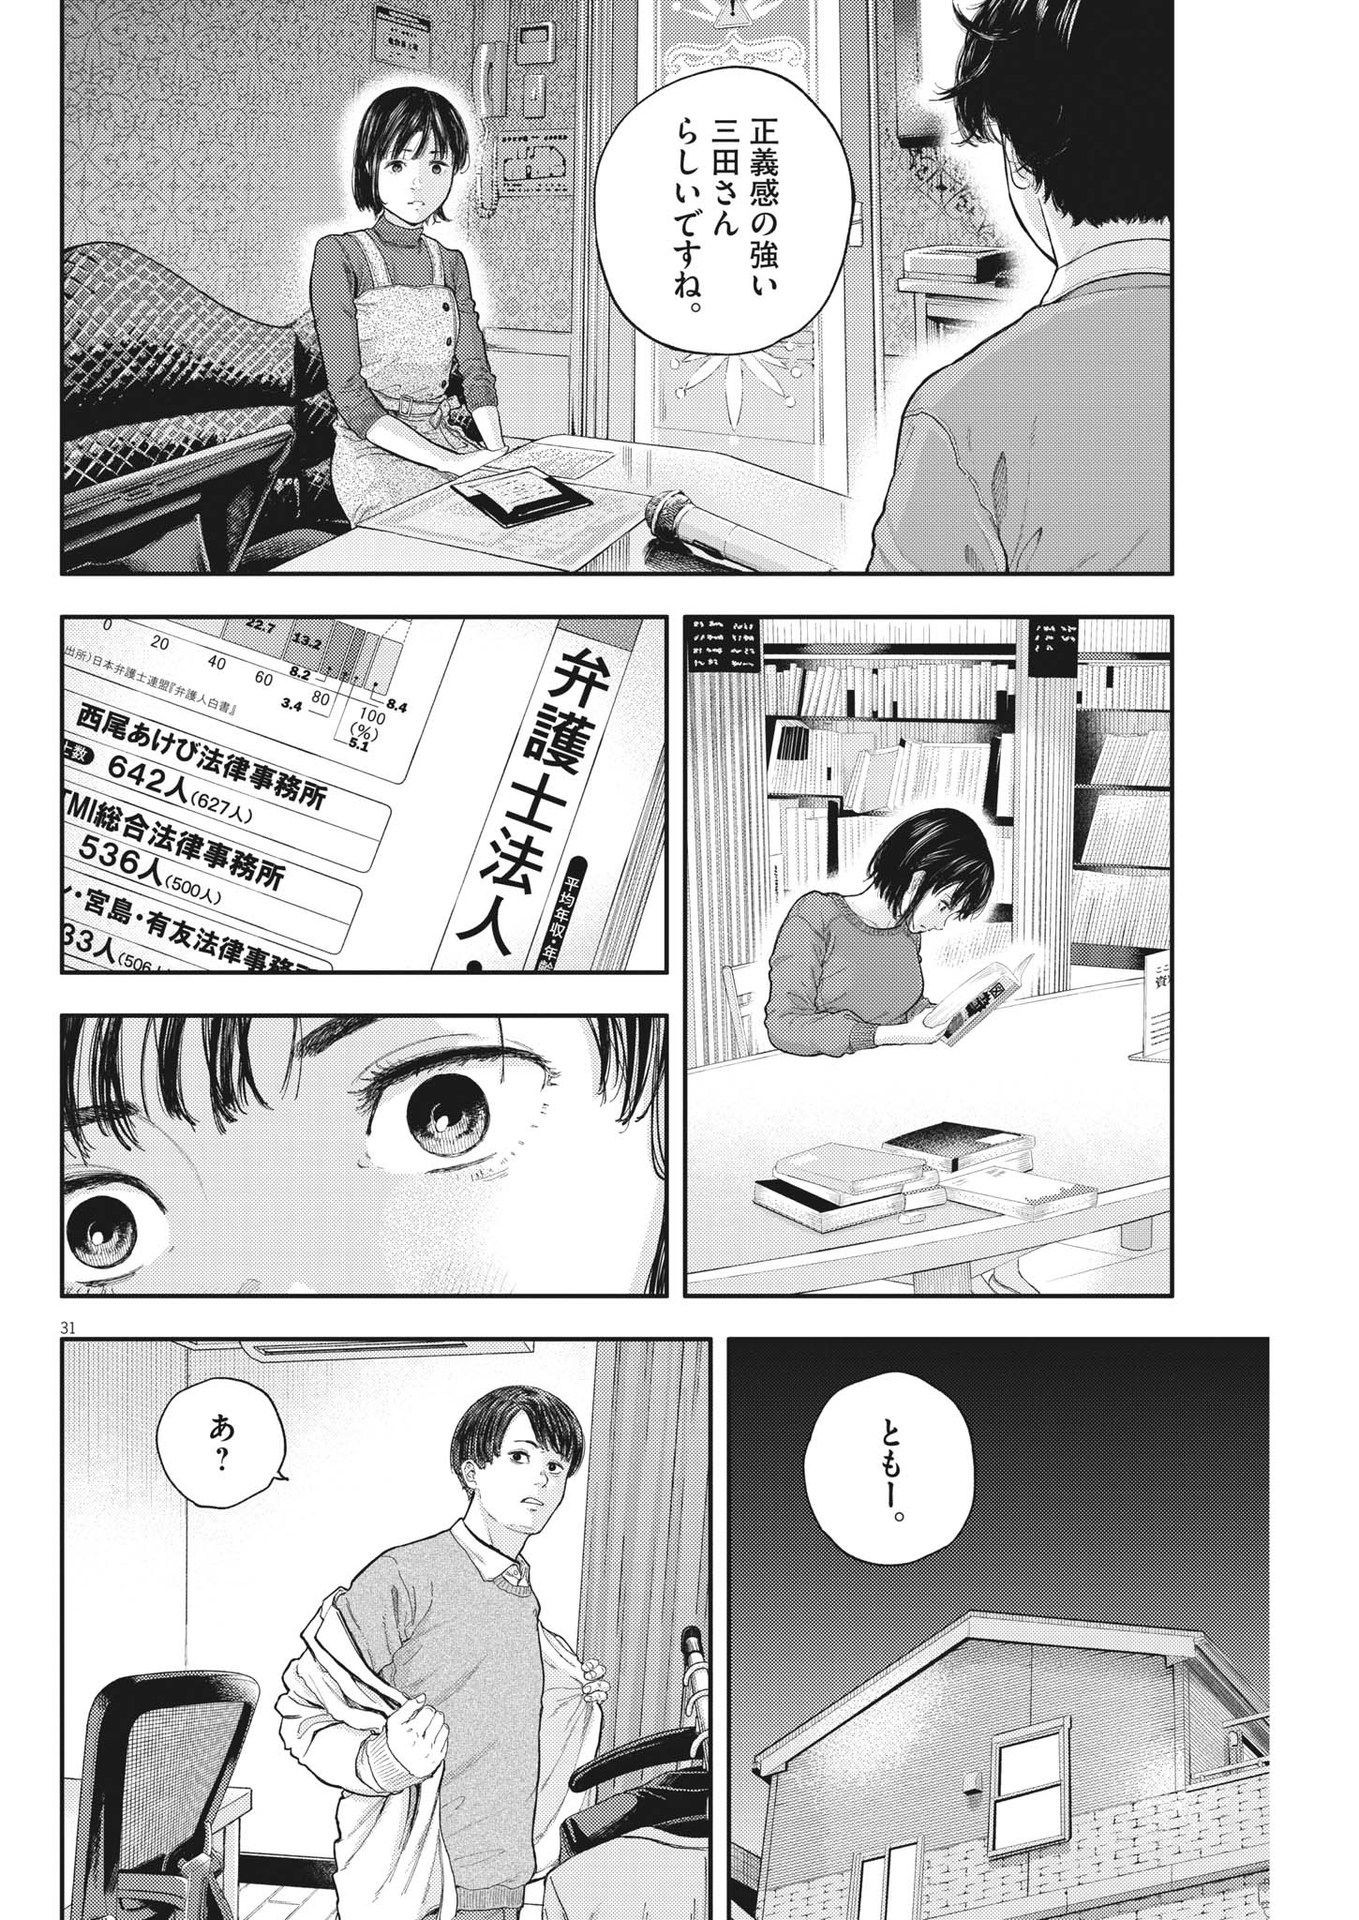 Yumenashi-sensei no Shinroshidou - Chapter 2 - Page 31